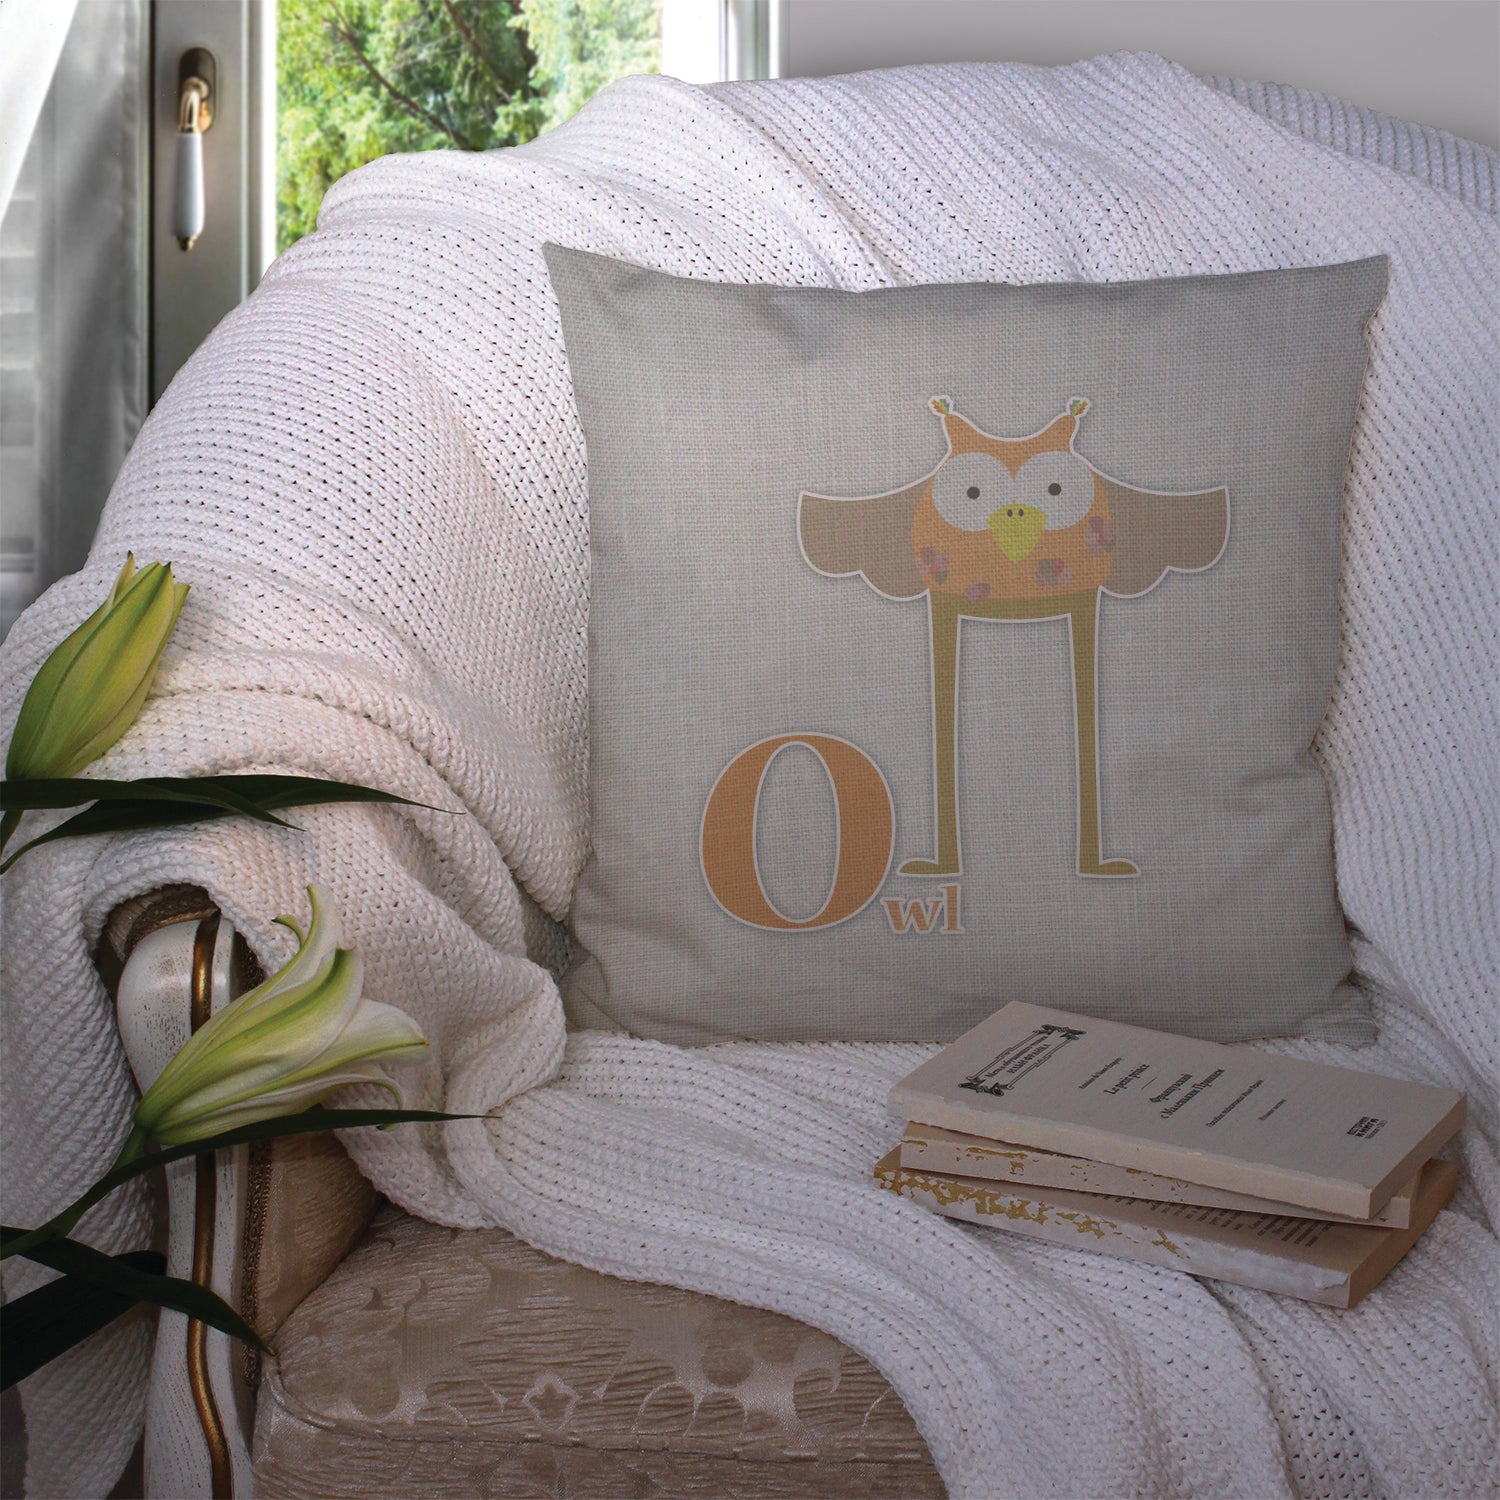 Alphabet O for Owl Fabric Decorative Pillow BB5740PW1414 - the-store.com